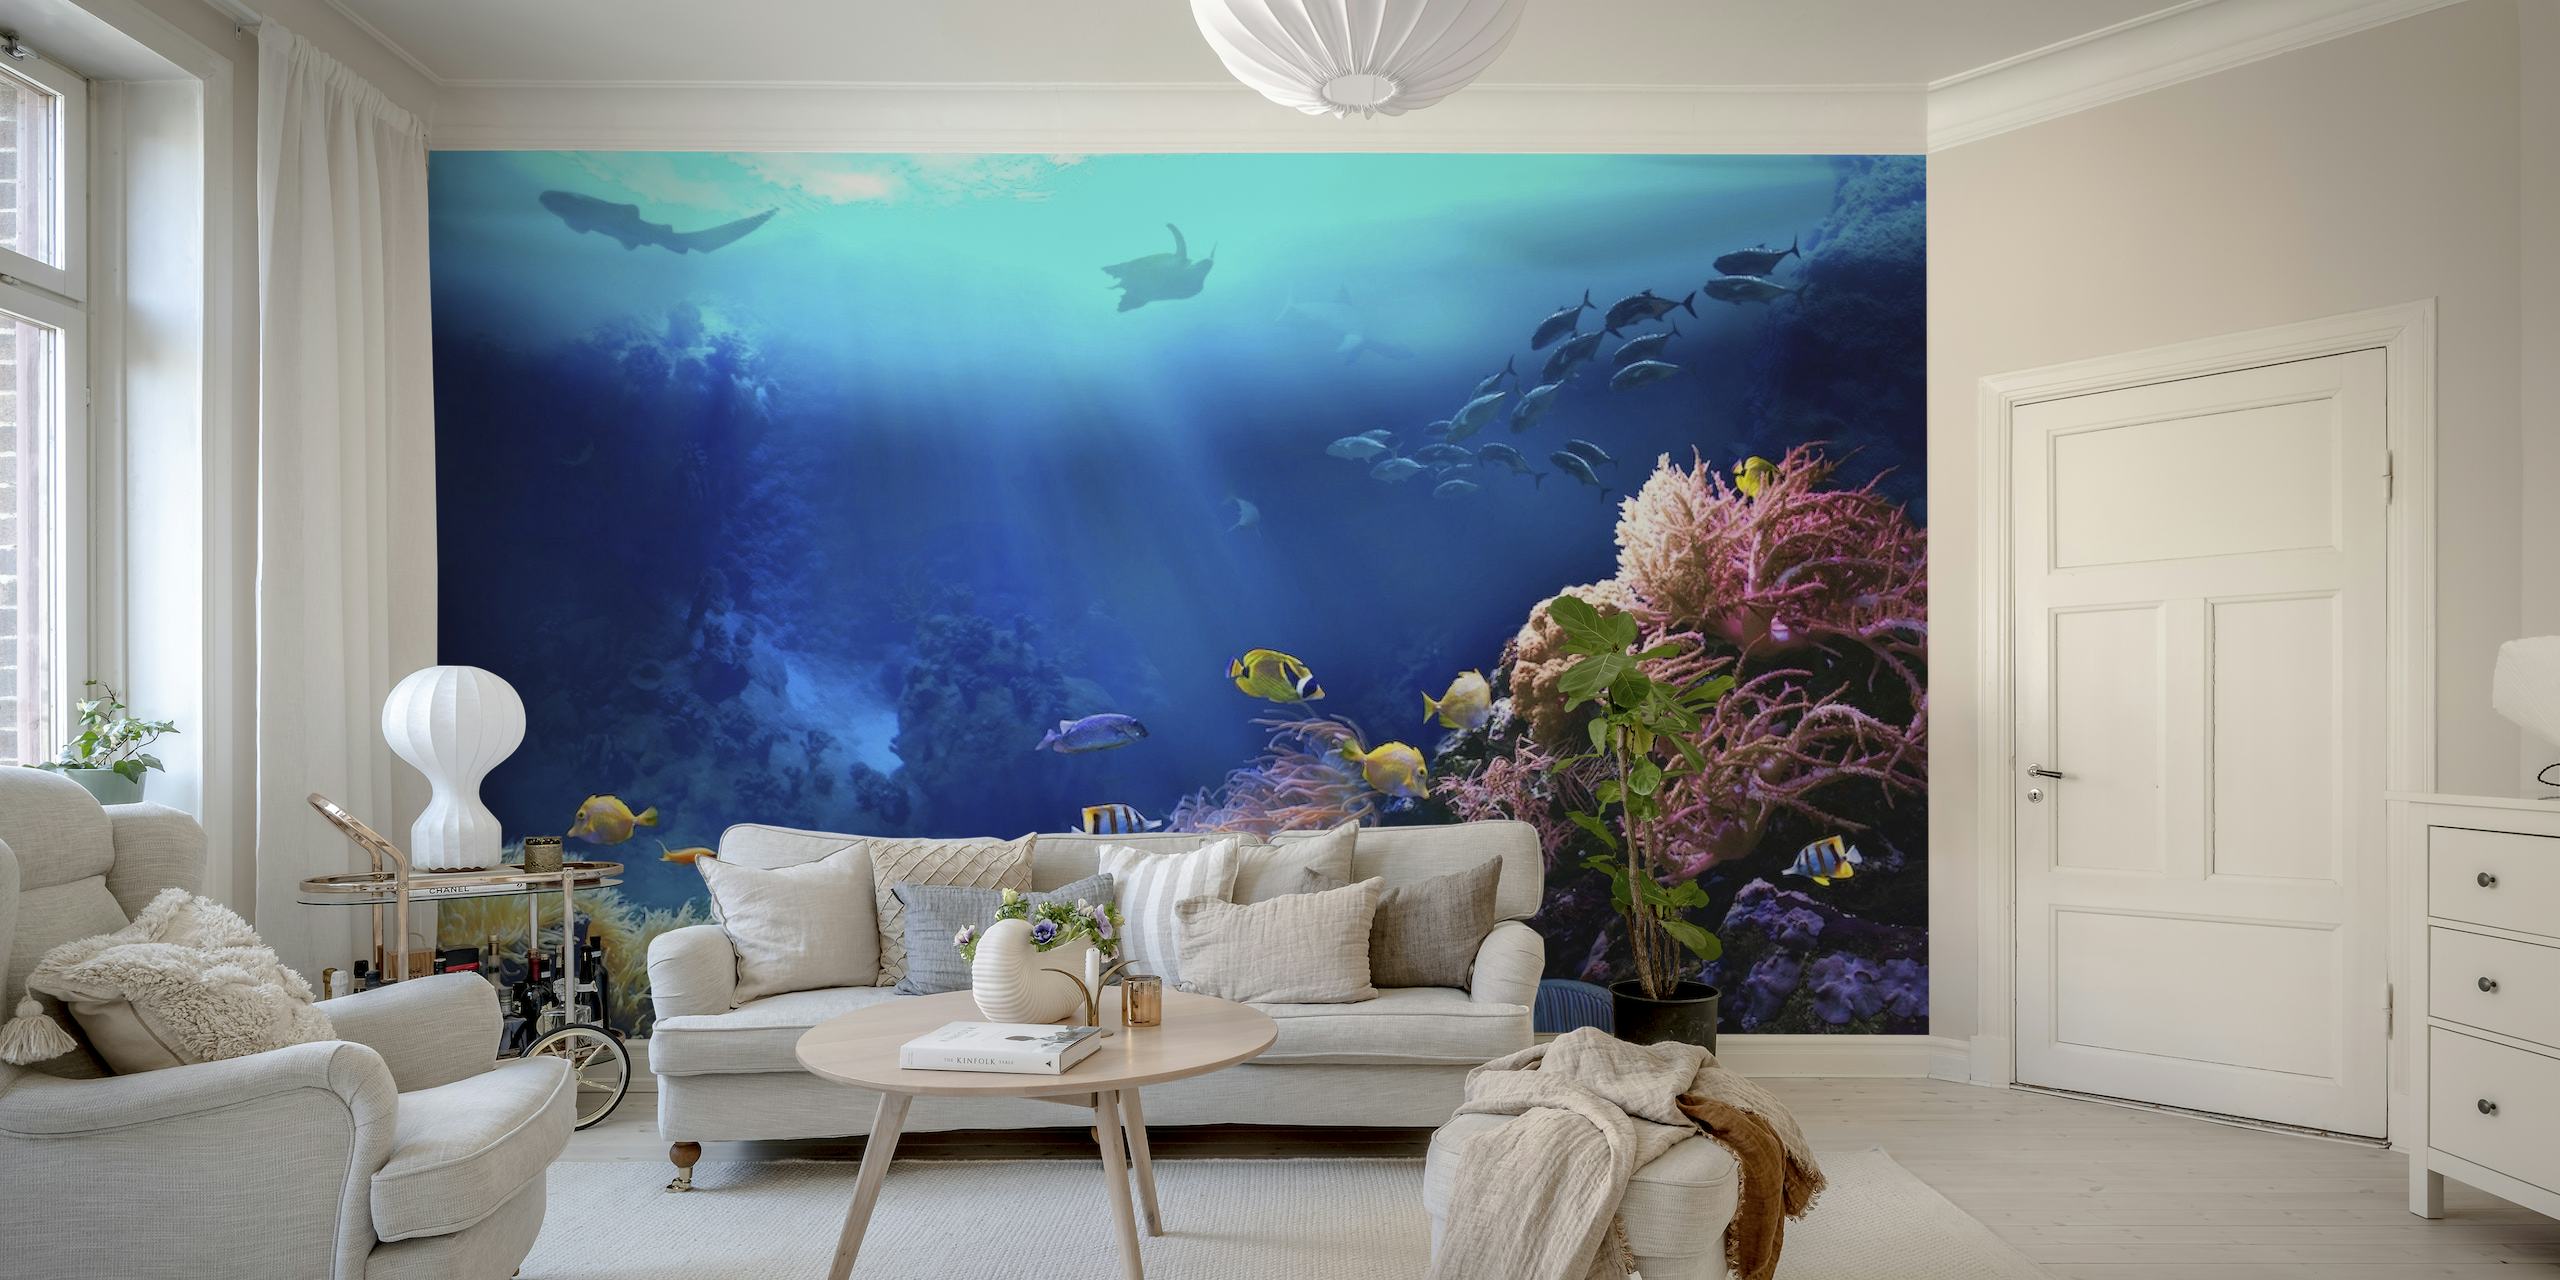 Colorato paesaggio marino sottomarino con murale di coralli e pesci